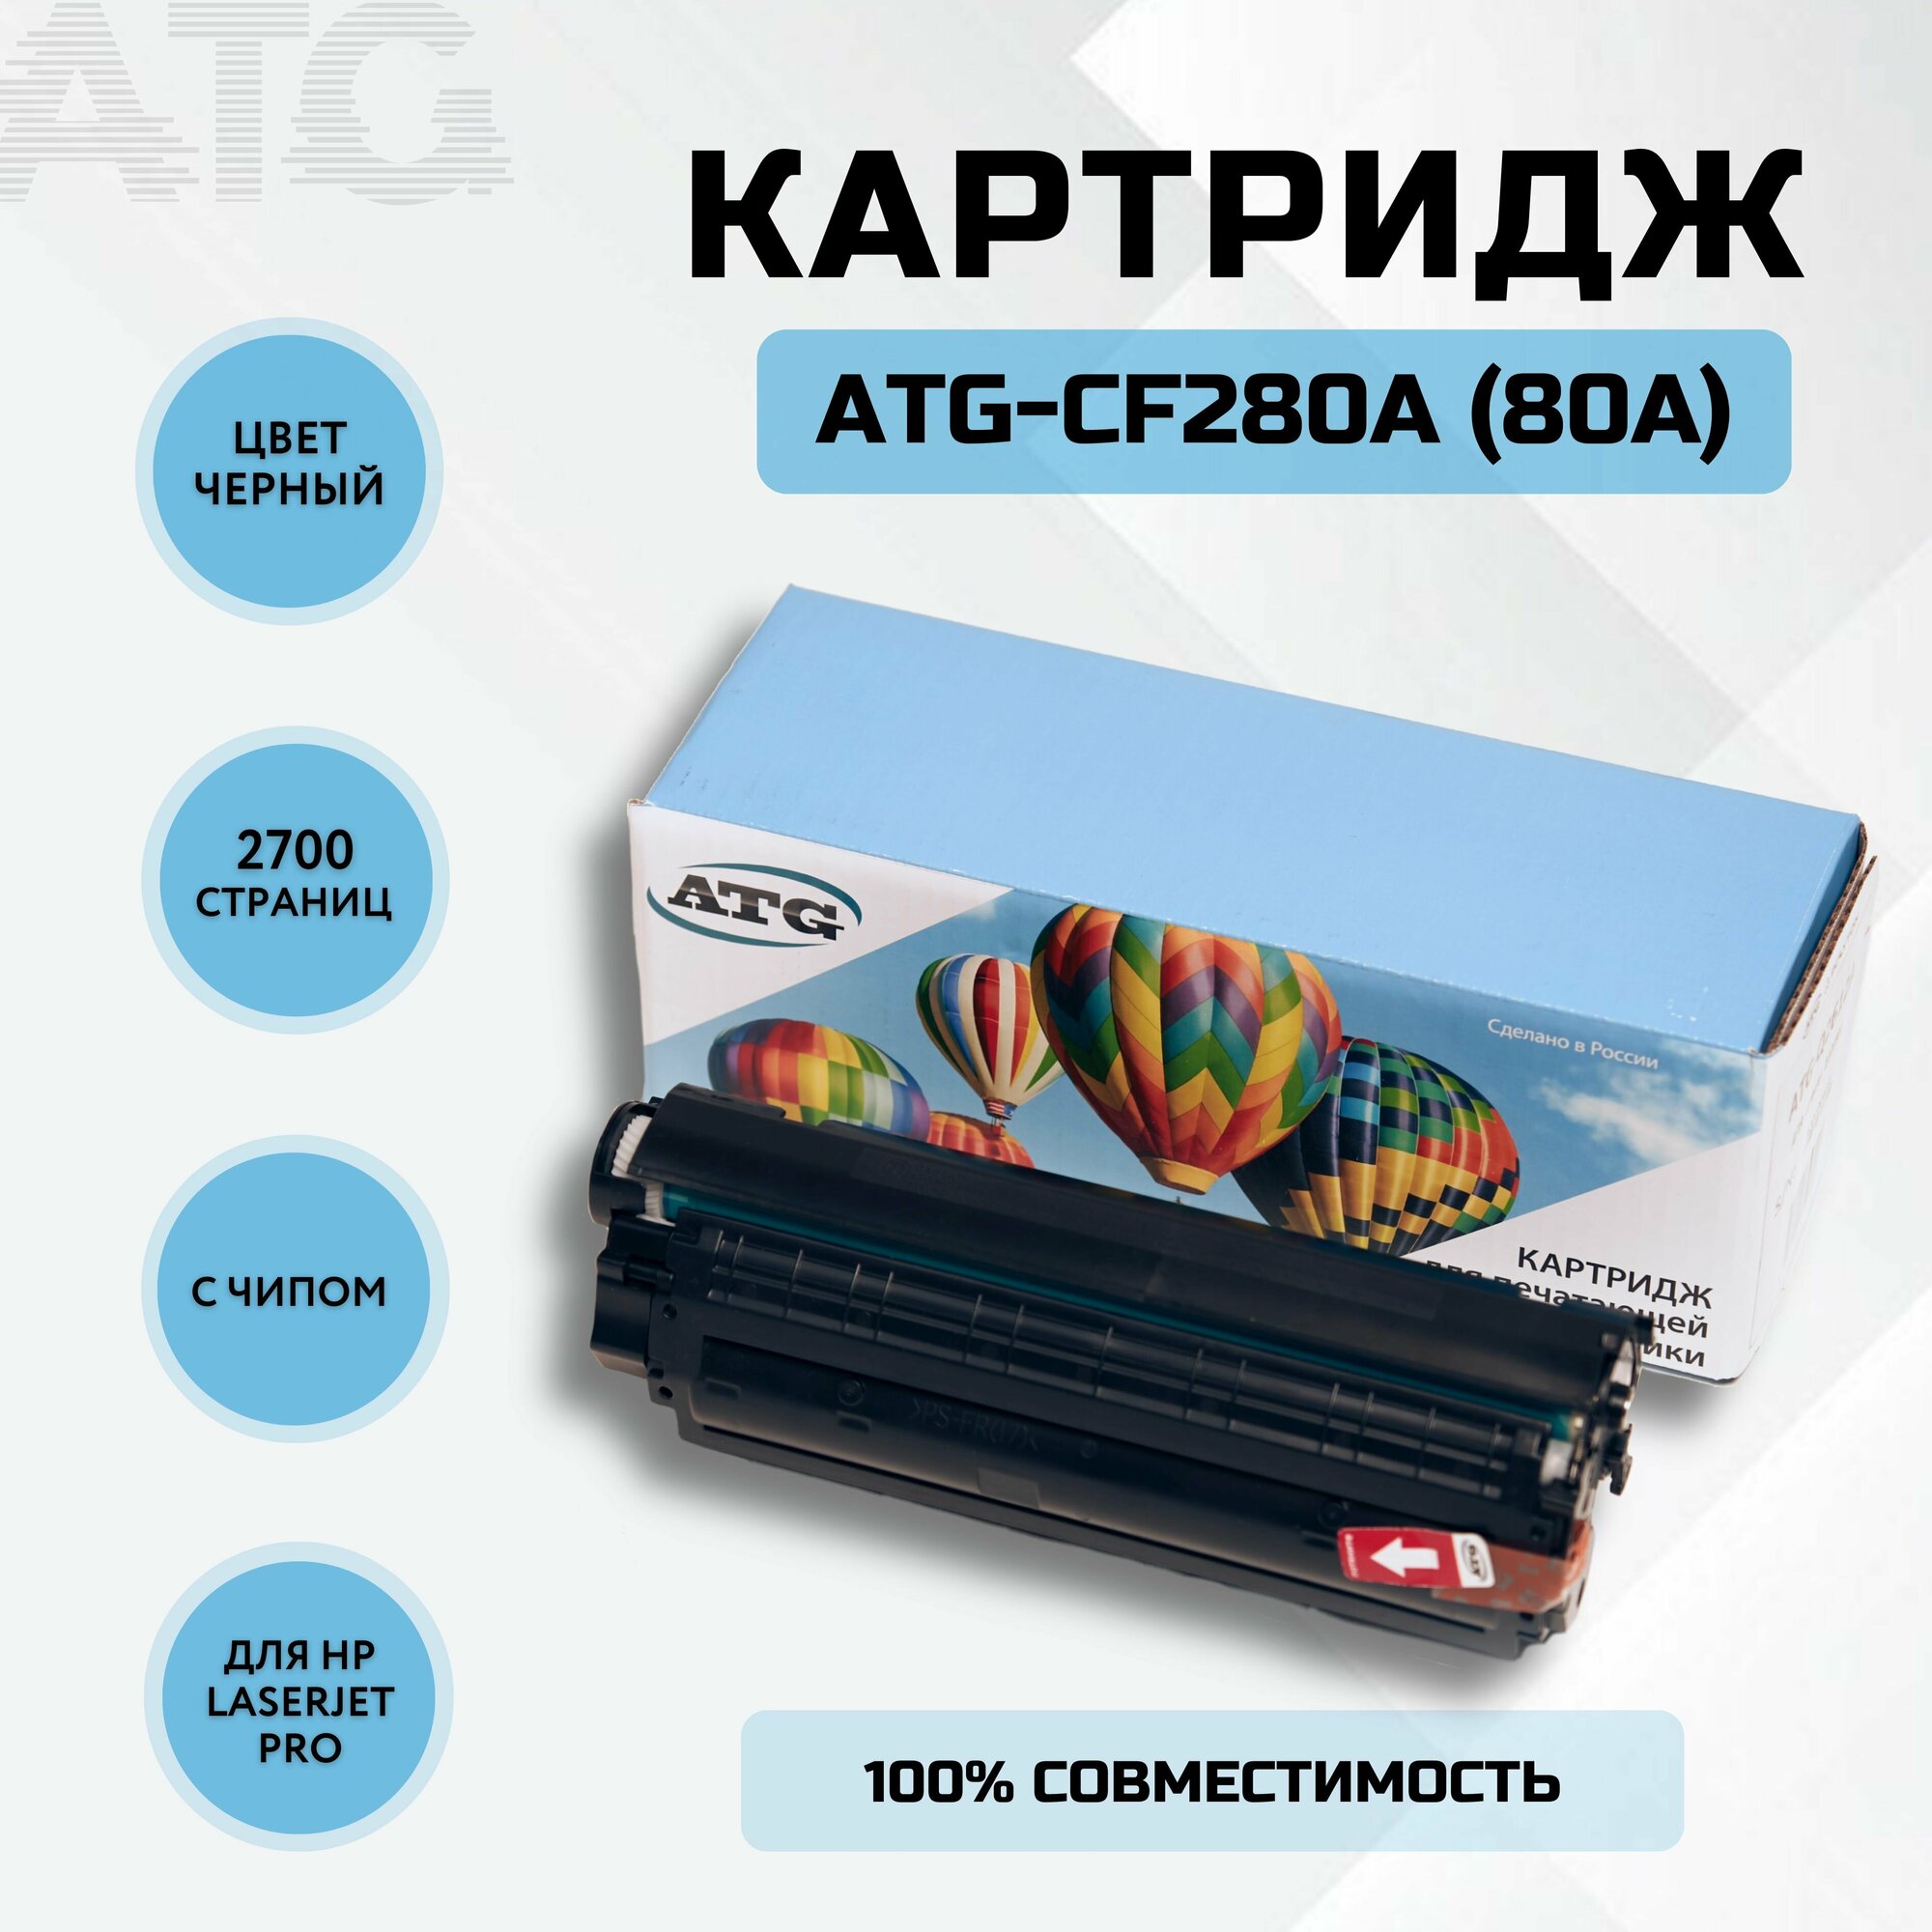 Картридж ATG-CF280A (80A) лазерный для принтера HP LaserJet Pro 400 M304/M404